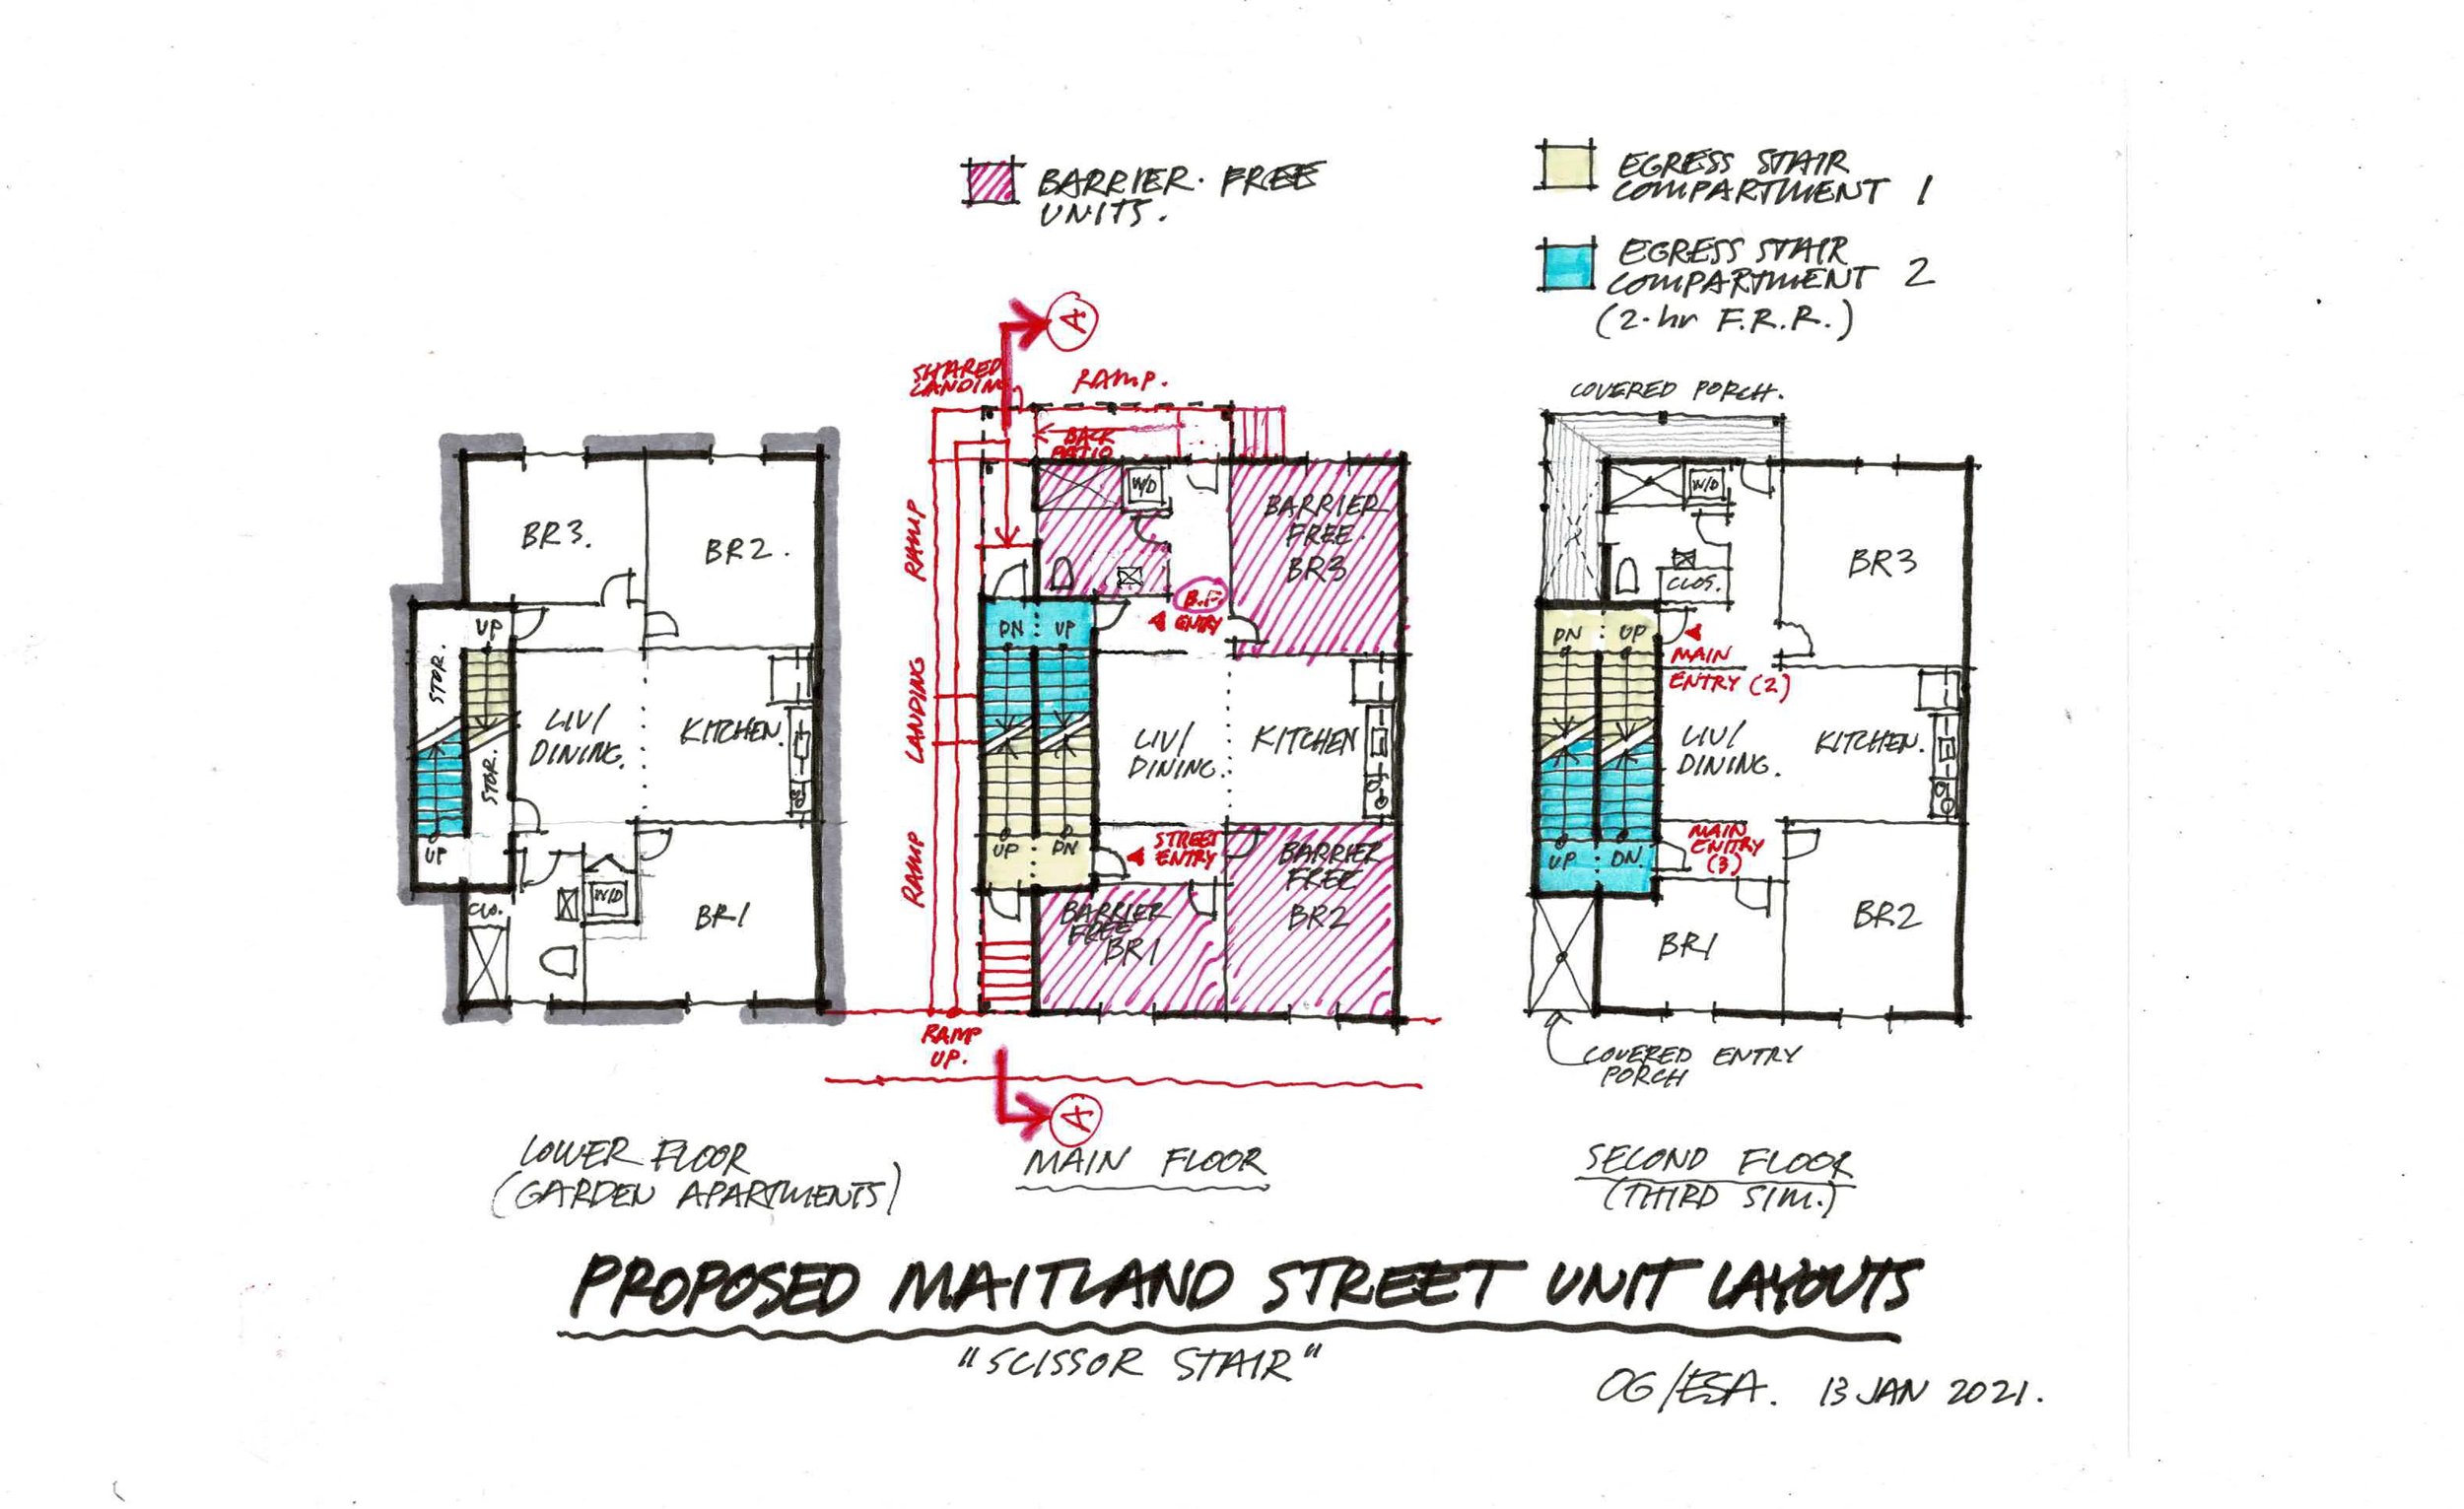 Maitland Street Prelim Layout Sketches_2021-01-13-1.jpg